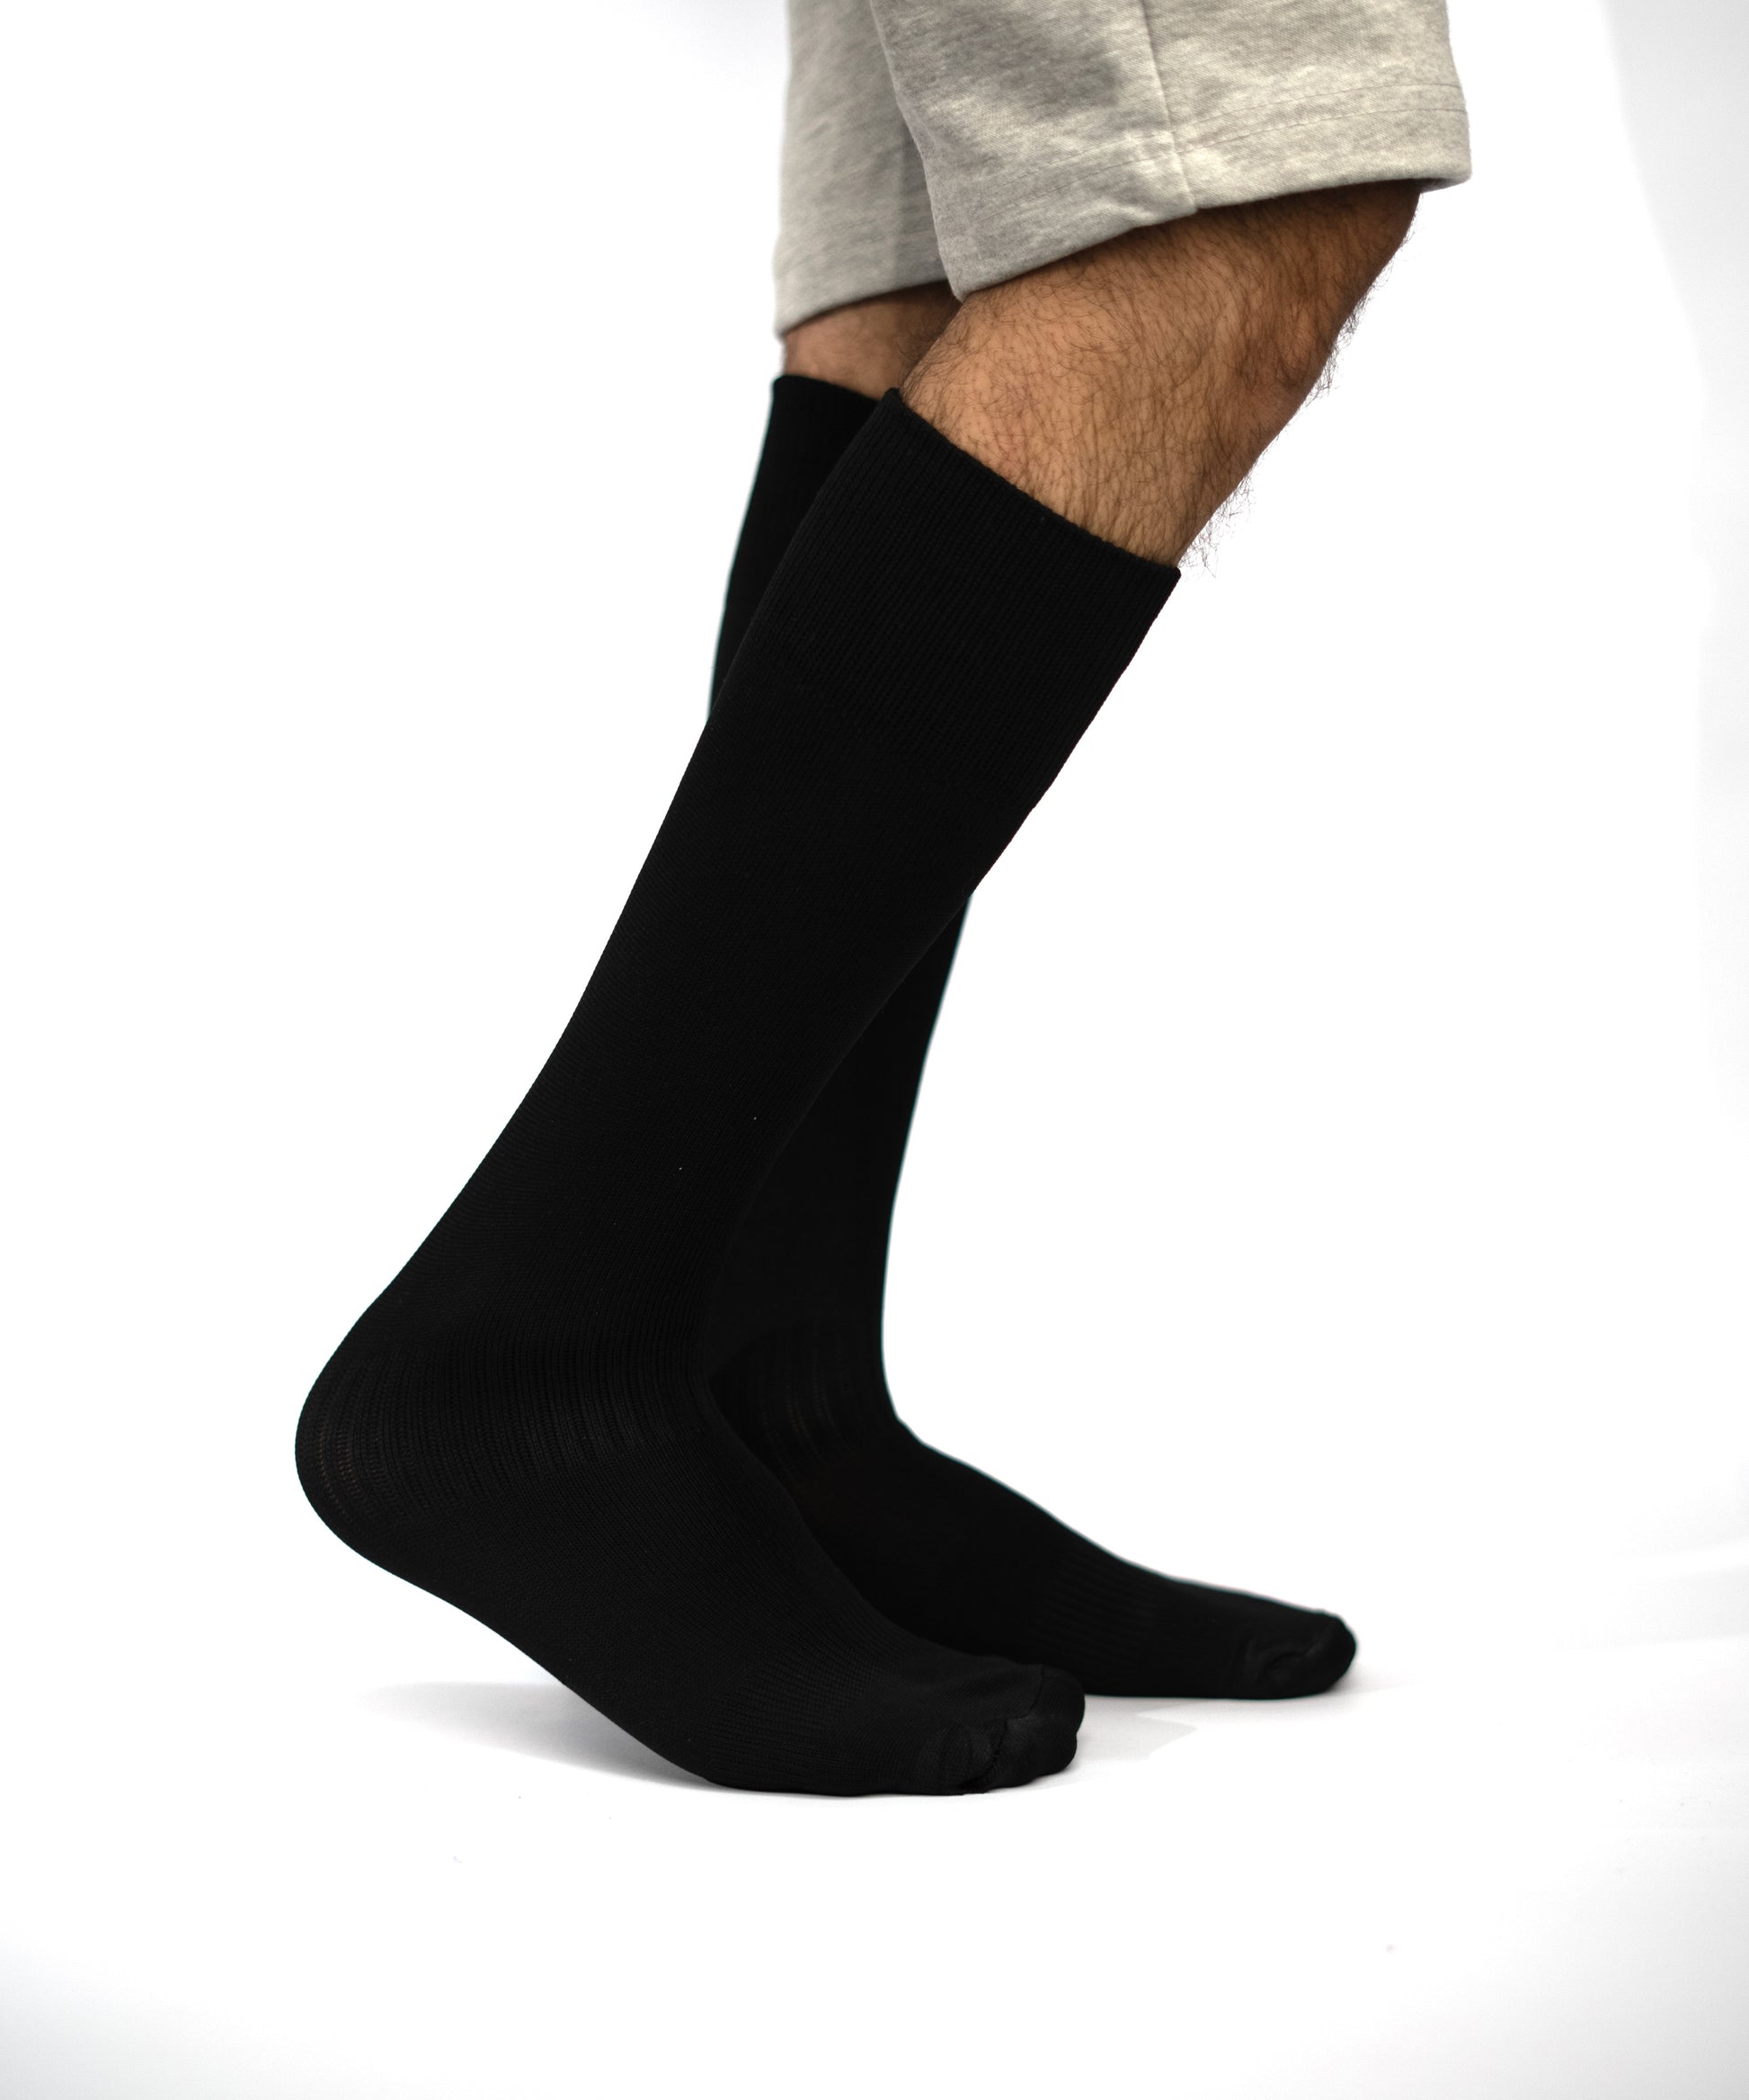 Football Socks - Socks